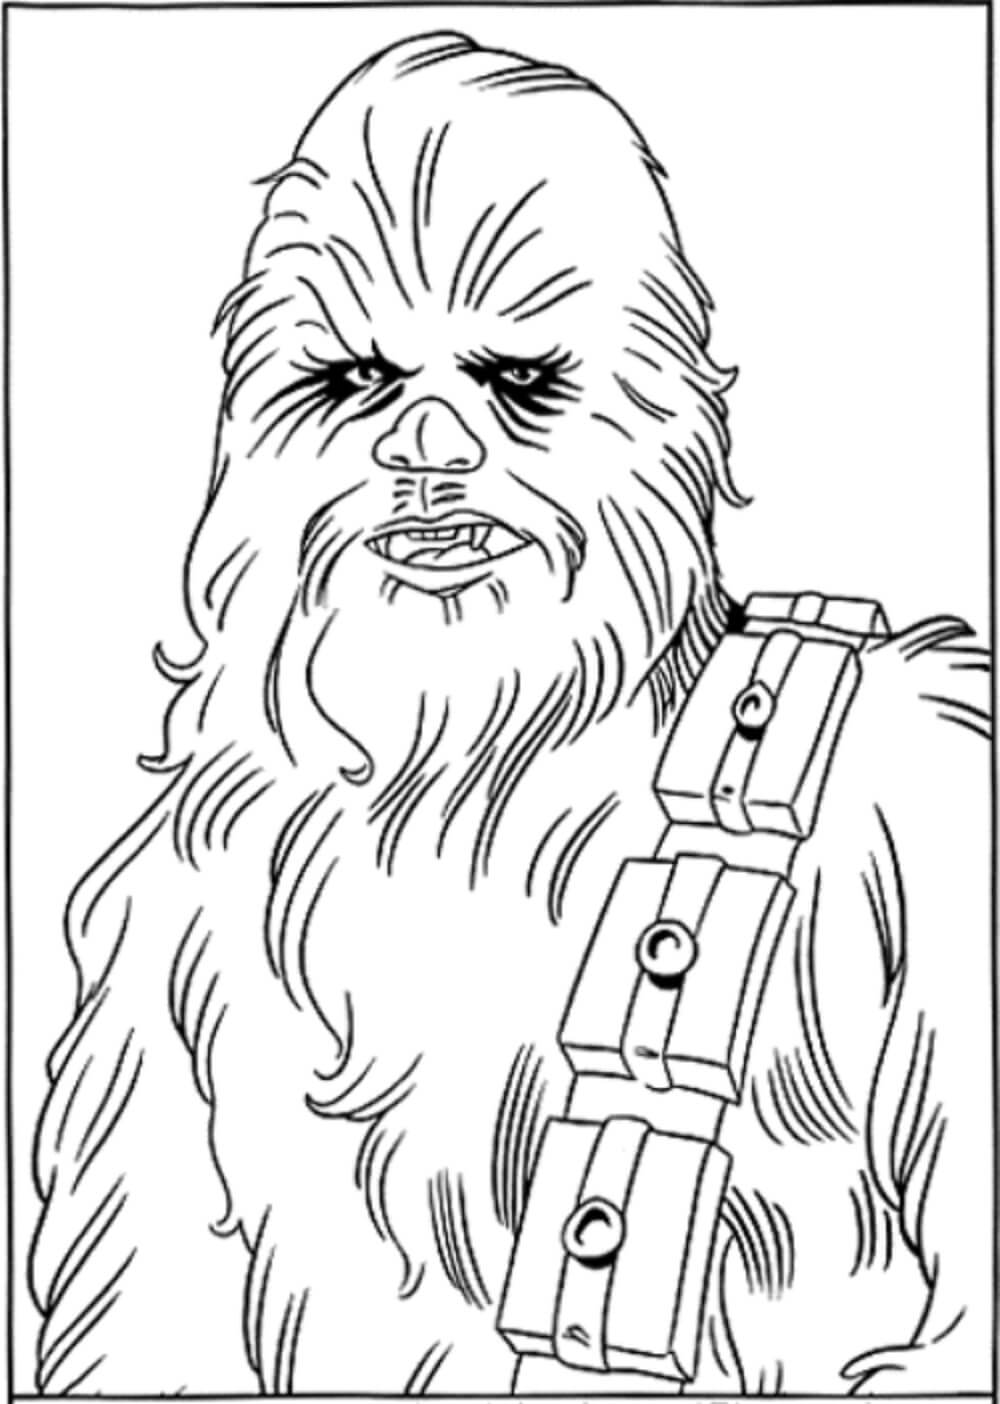 Portrett av Chewbacca fargeleggingsside